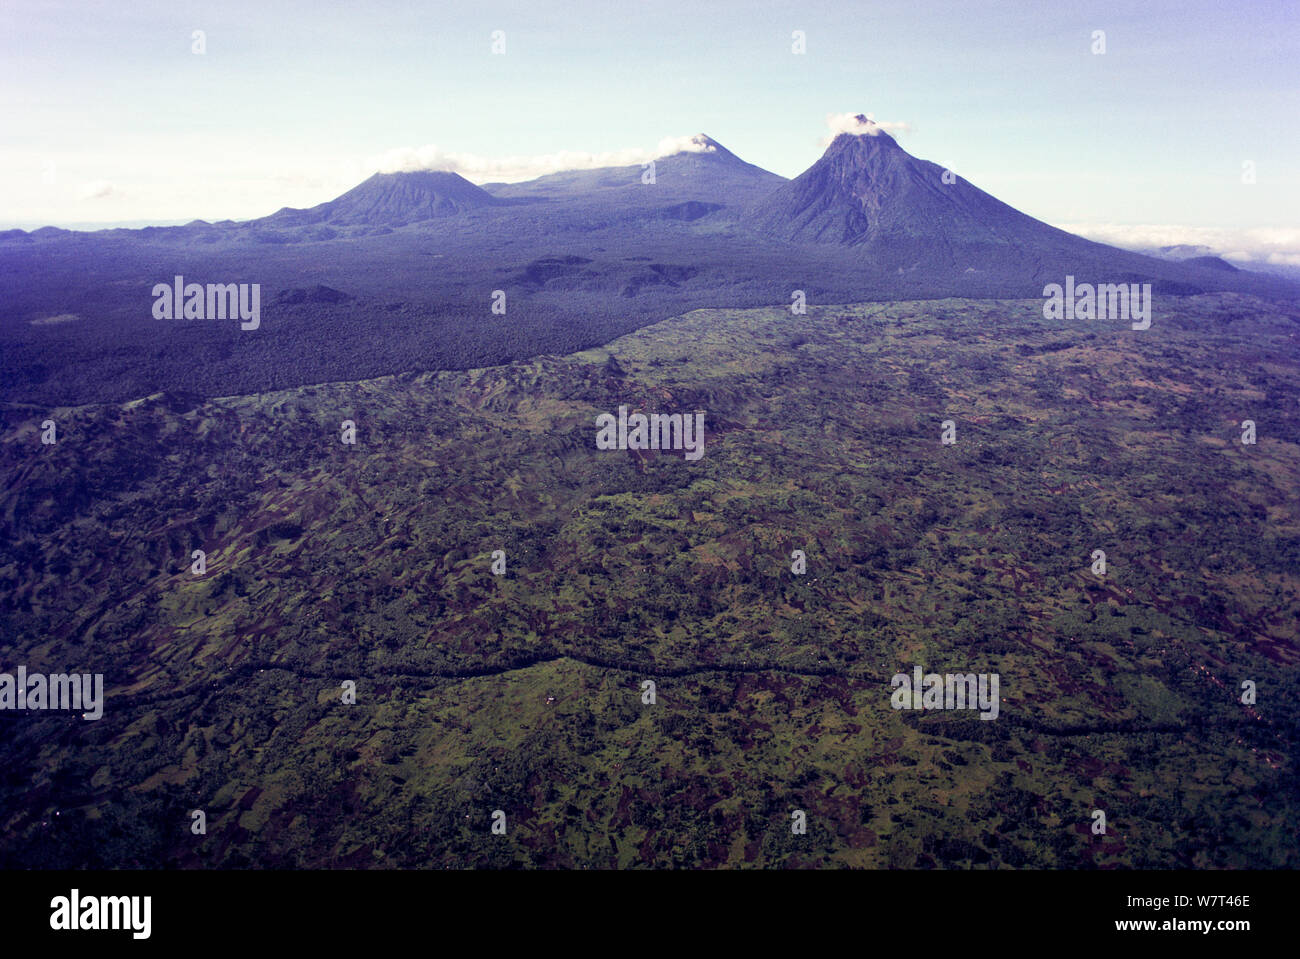 Macizo de Virunga Volcán GAMA (de izquierda a derecha: Monte Visoke, Monte Karisimbi y el Monte Mikeno) y bosques adyacentes, aislado y rodeado por asentamientos humanos y la agricultura. República Democrática del Congo. Septiembre 1993 Foto de stock